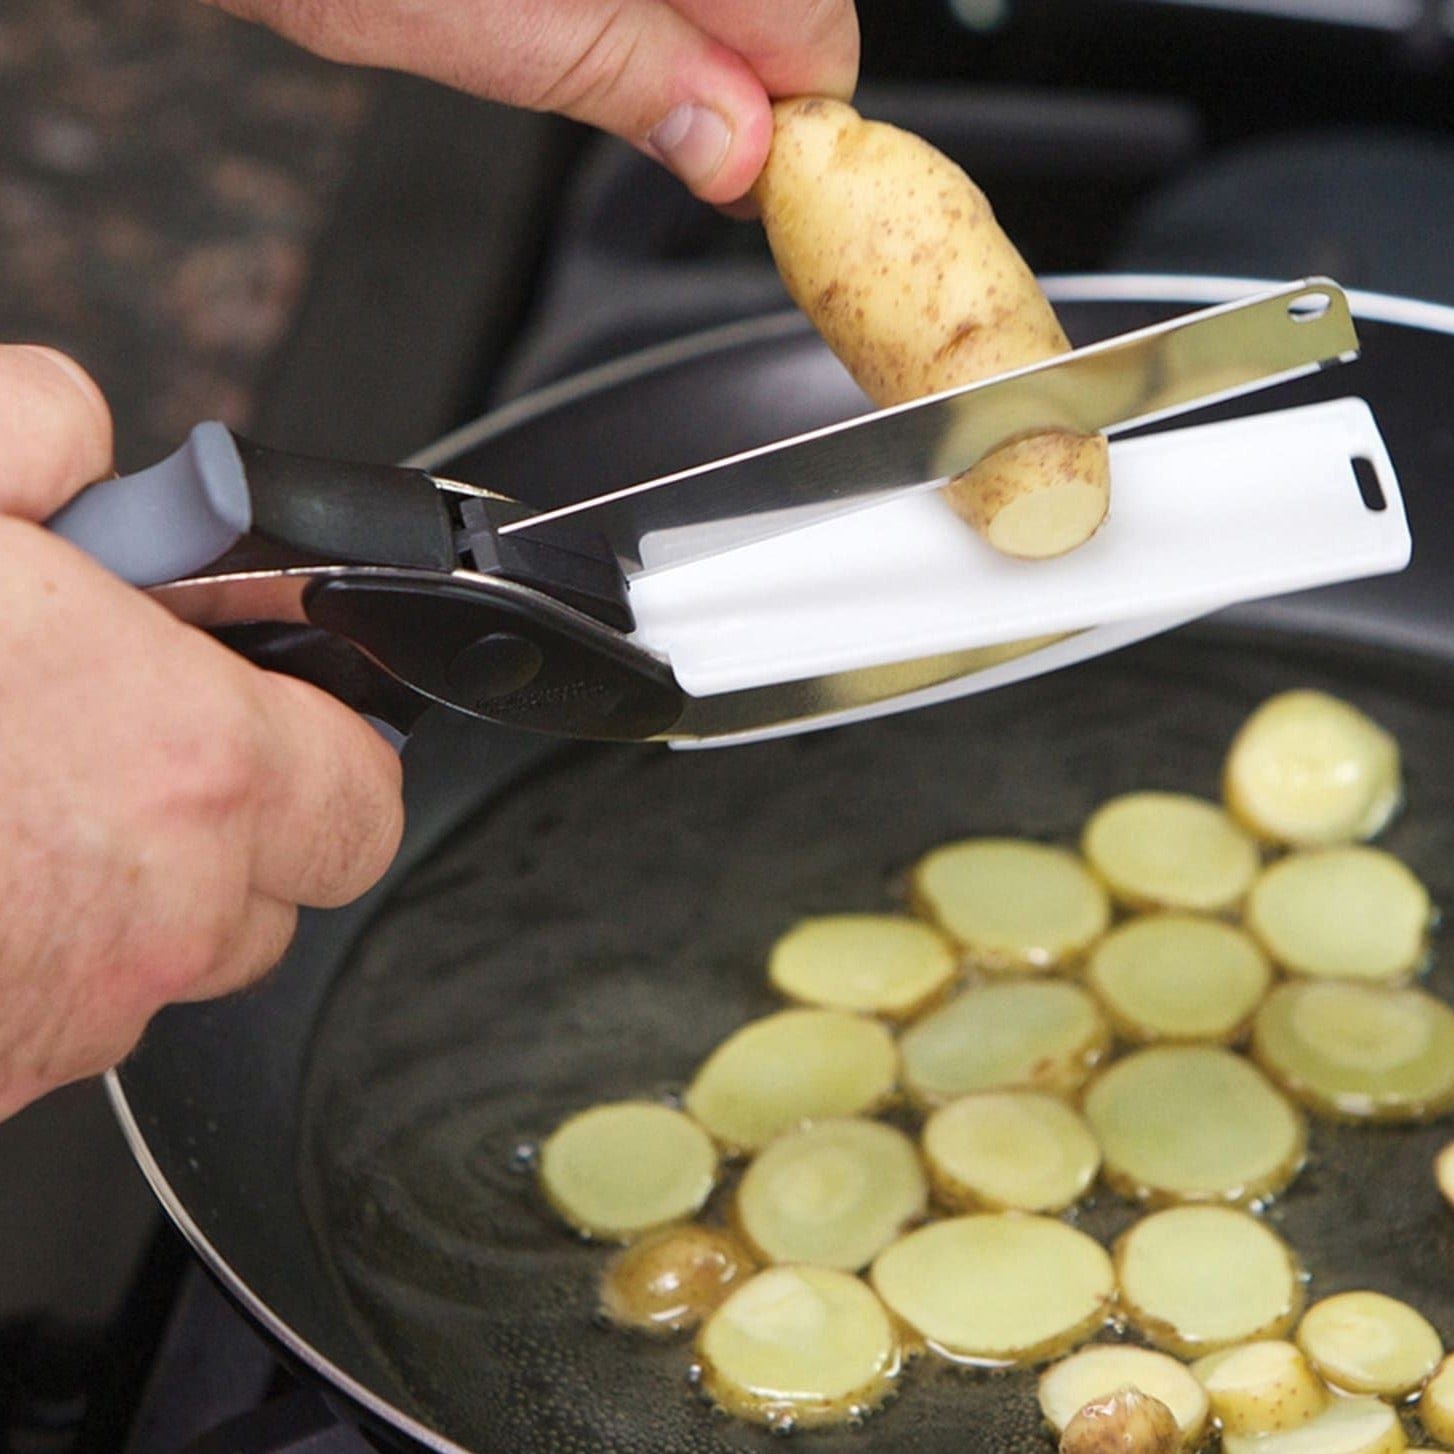 Vegetable Cutter Chopper Hand Machine Onion Potato Carrot Cutter - Slickut™ Slickut™ Zaavio®